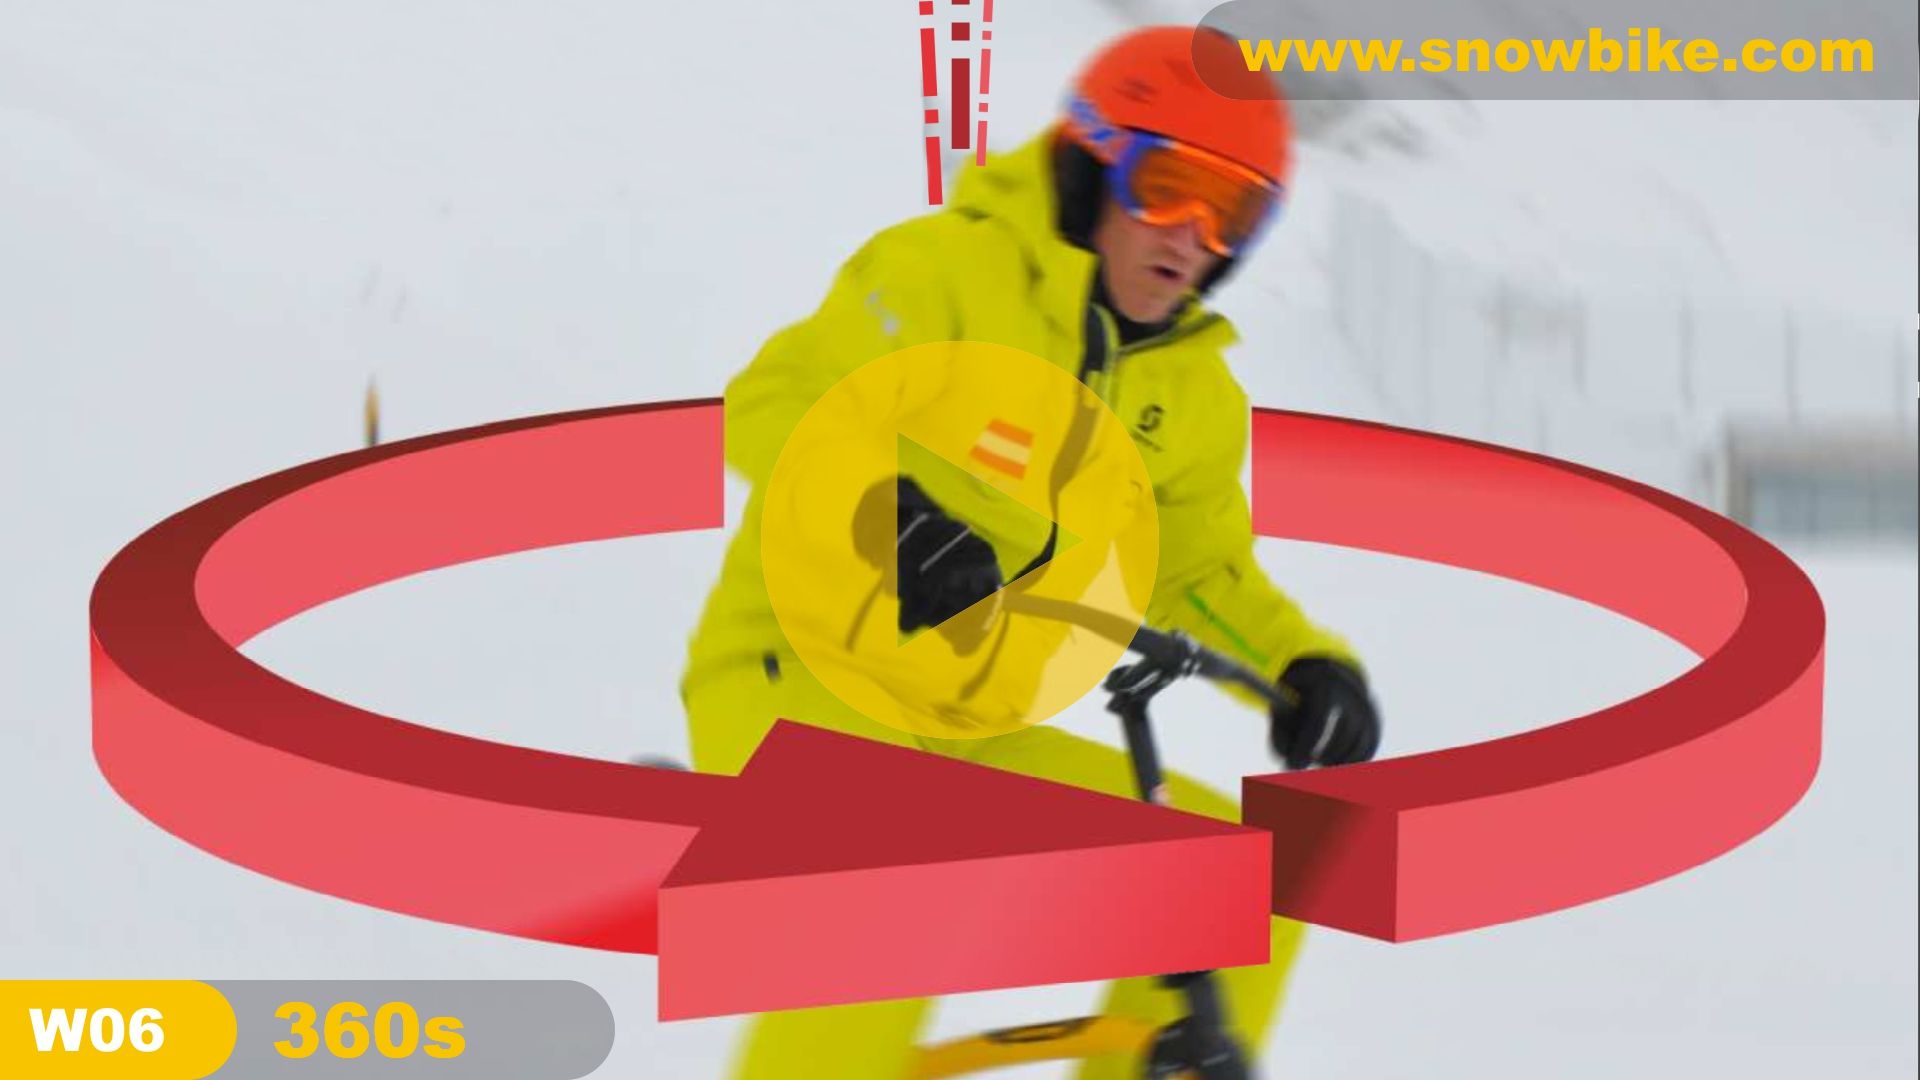 brenter-snowbike-official-guinness-world-record-360s-cover4F653000-7262-8E43-10D8-EAD6AE868460.jpg